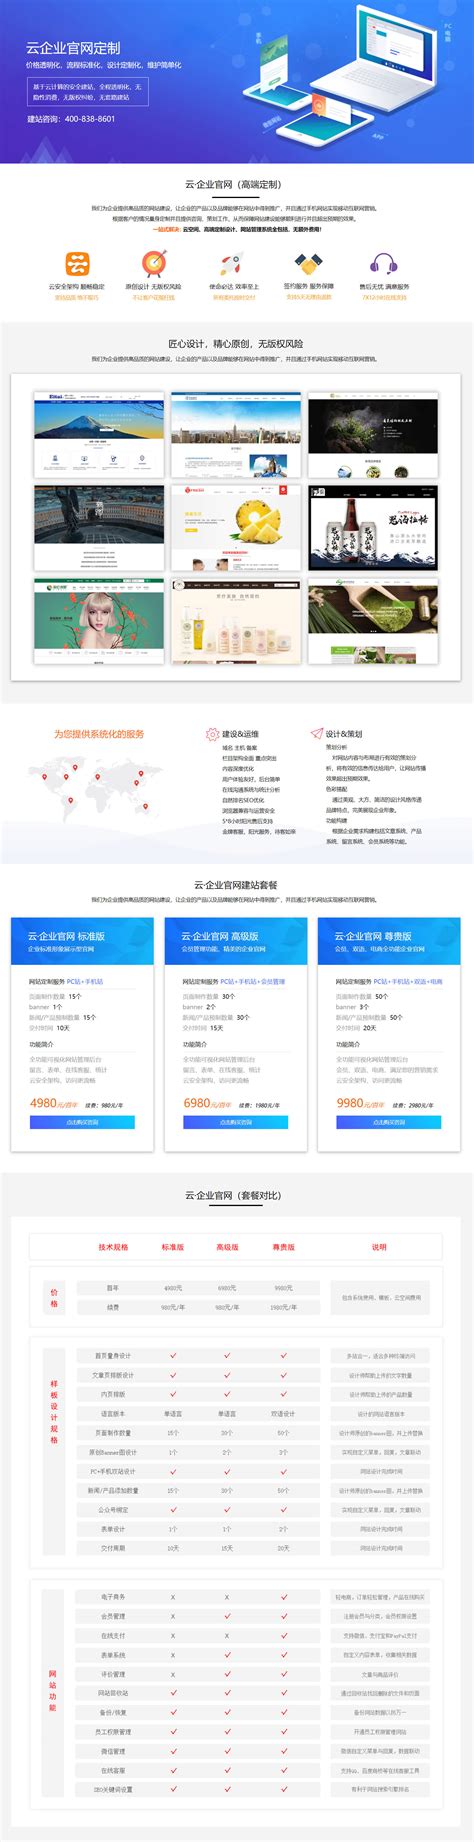 南京外贸网站建设设计方案